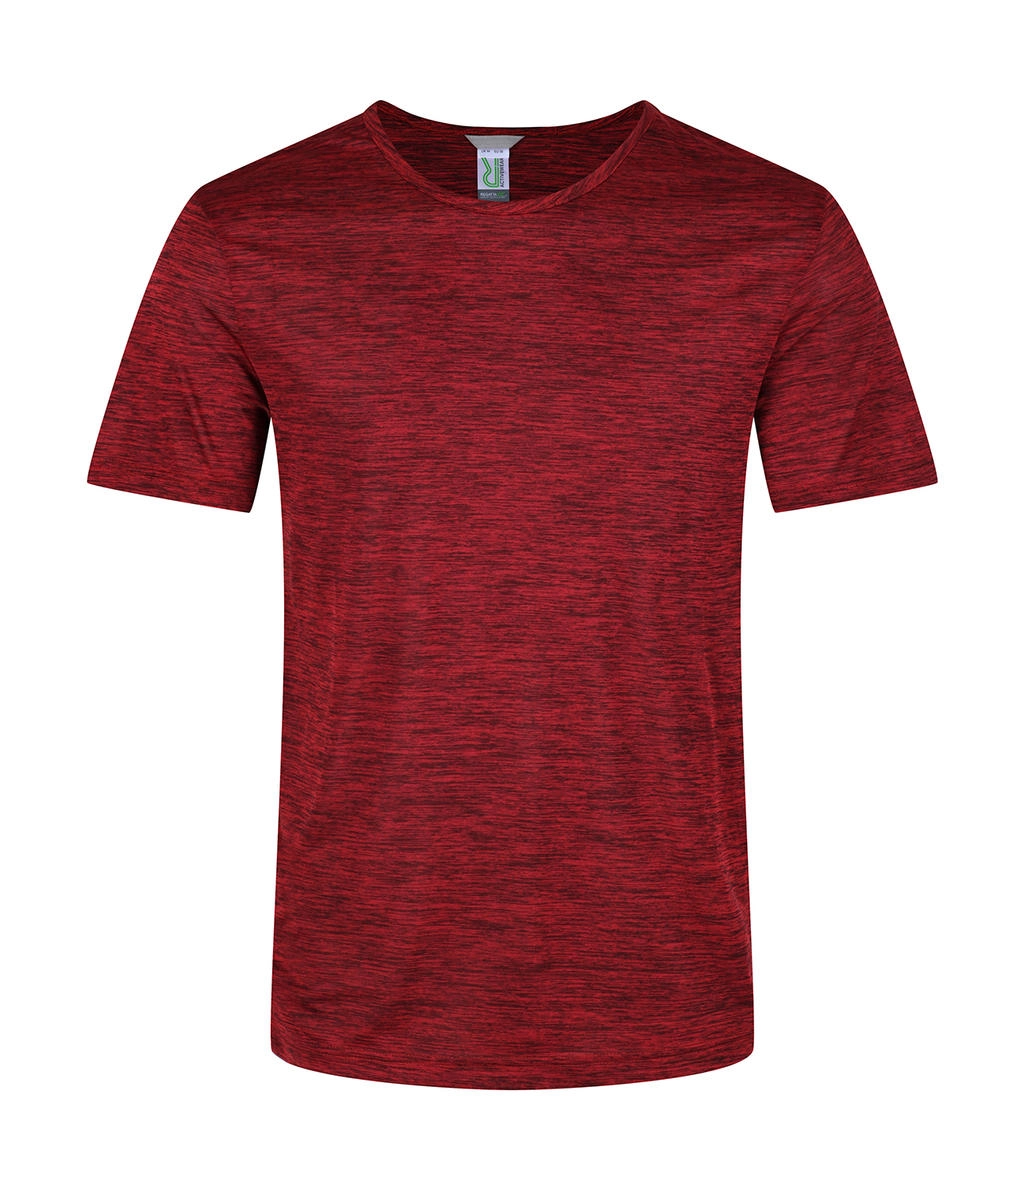 Antwerp Marl T-Shirt zum Besticken und Bedrucken in der Farbe Classic Red Marl mit Ihren Logo, Schriftzug oder Motiv.